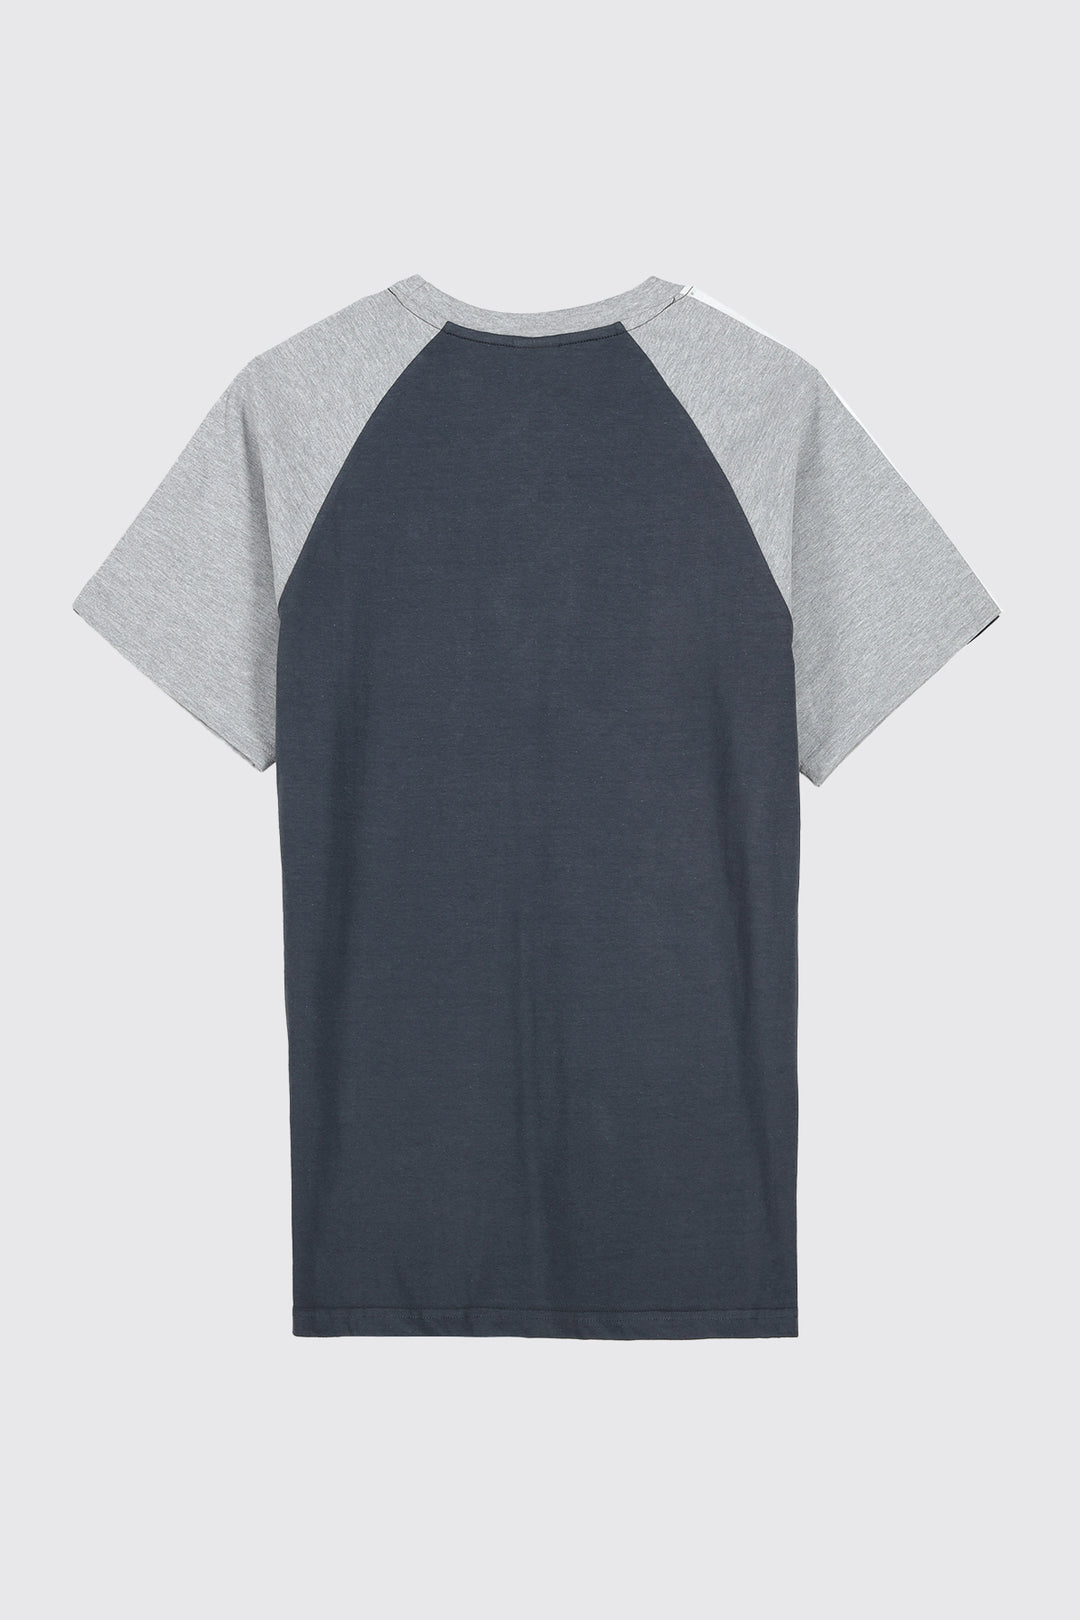 Dark Grey & Heather Grey Paneled Raglan T-Shirt - A23 - MT0282R